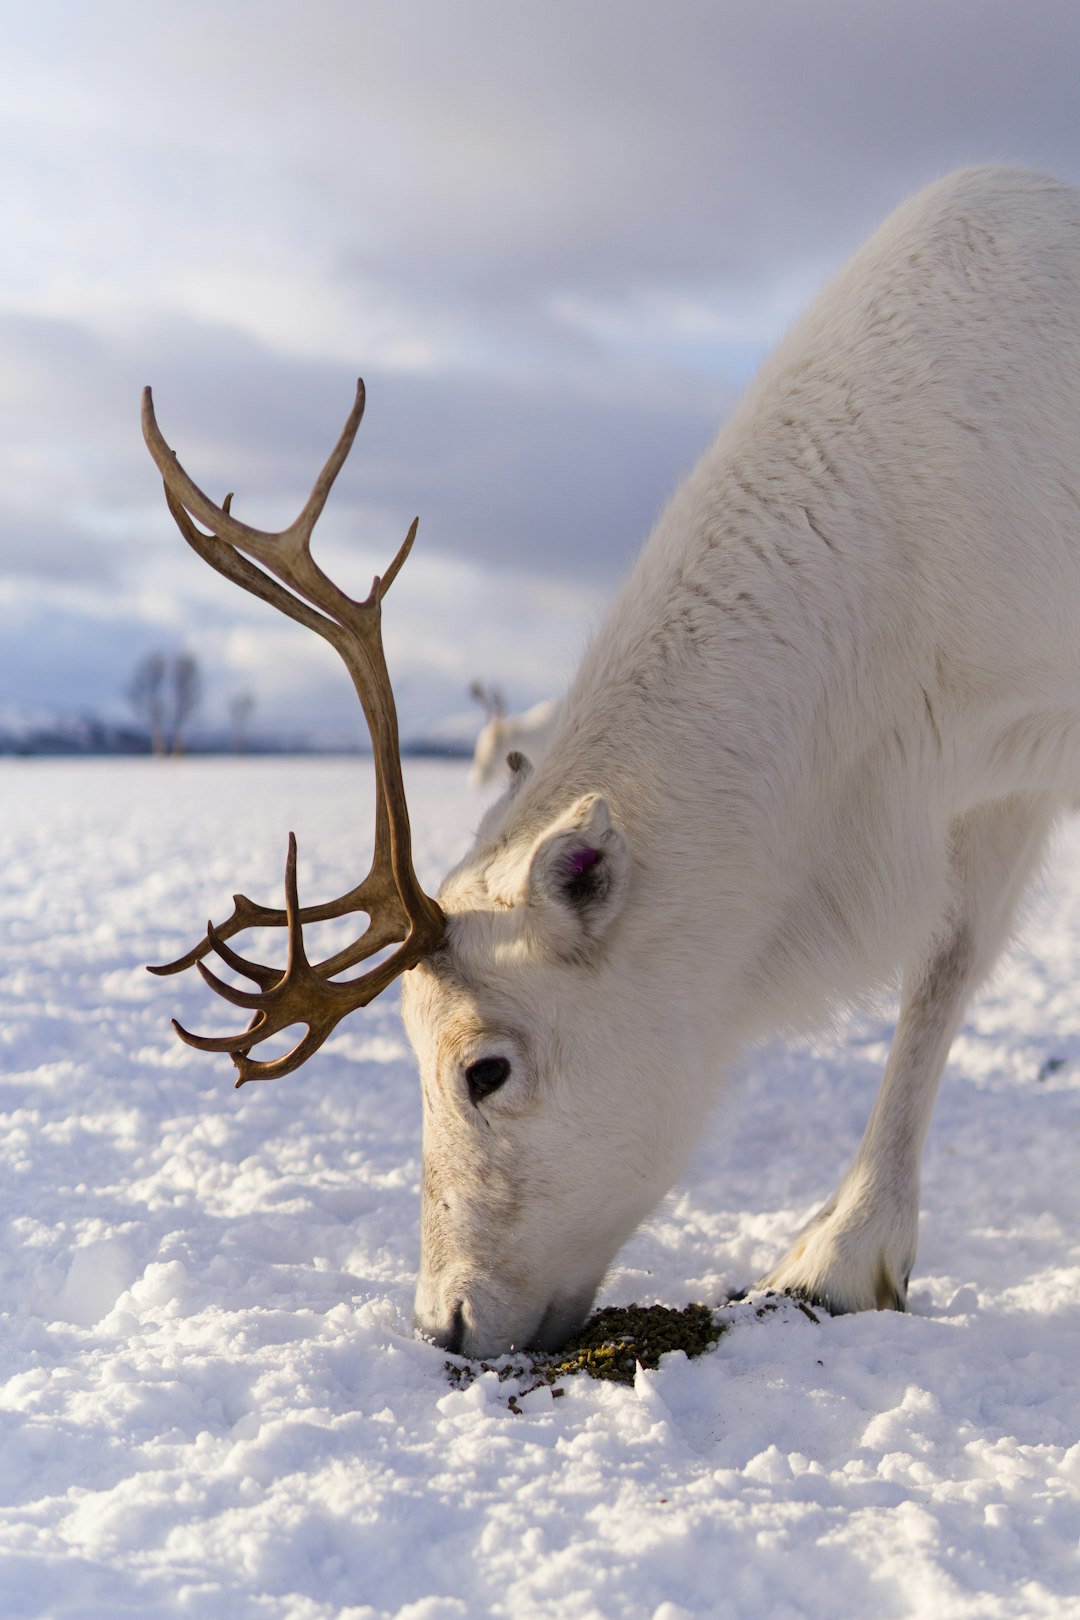 Reindeer eating in the snow